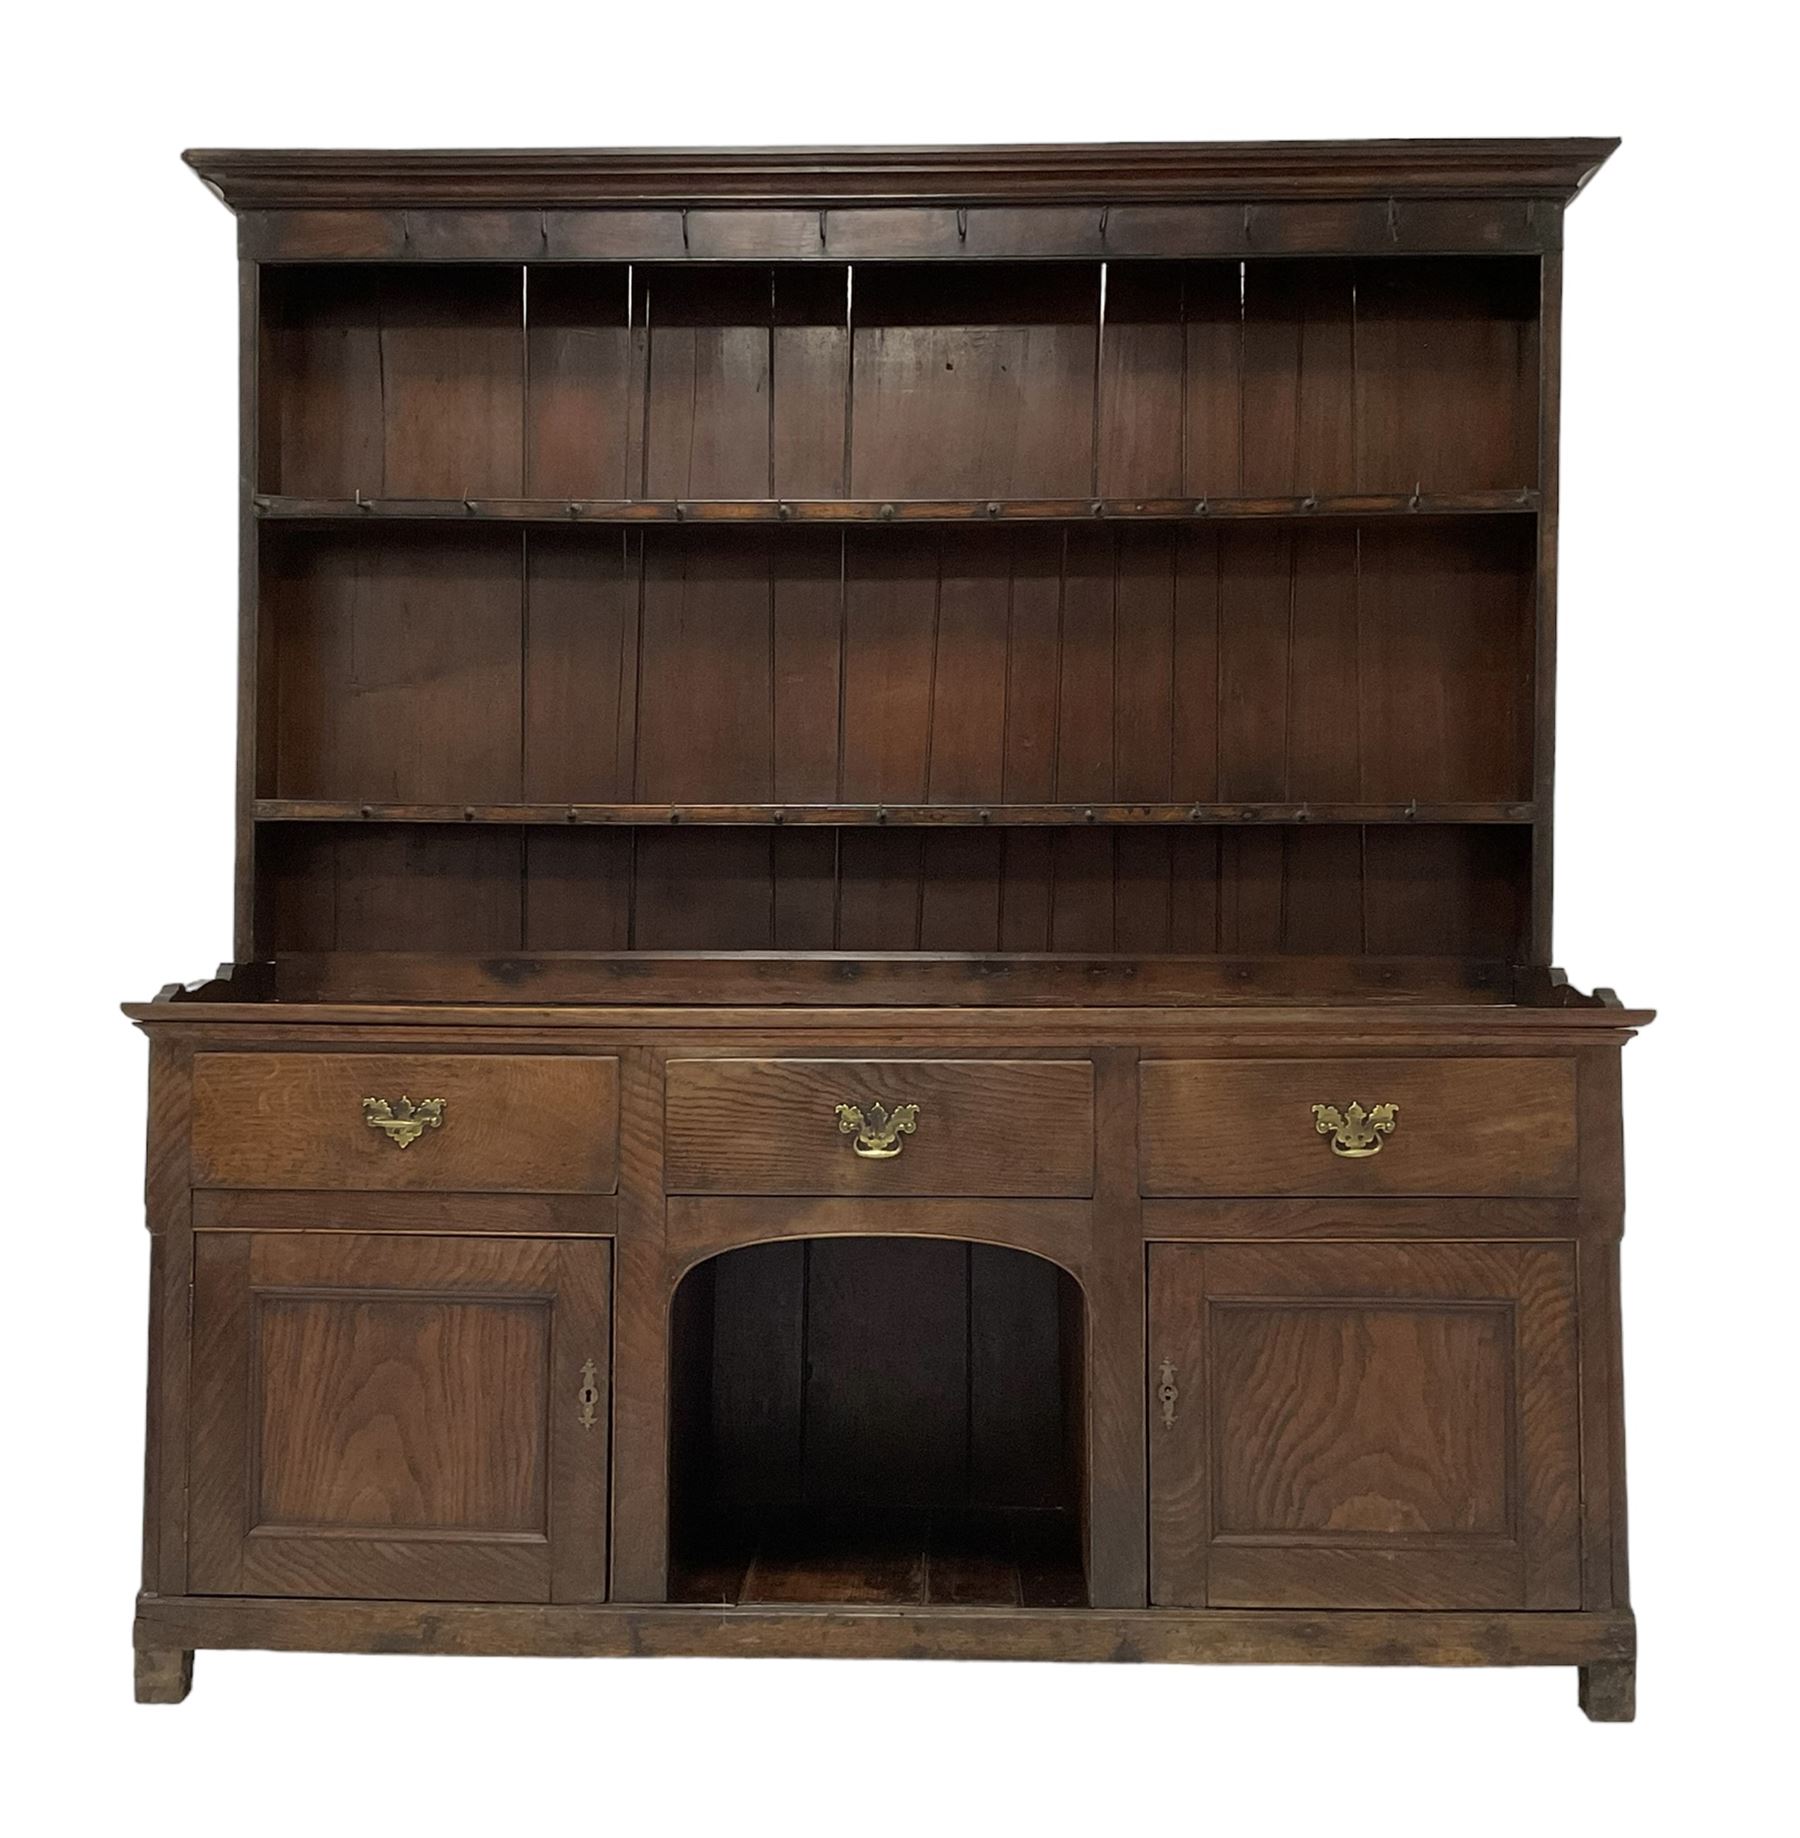 George III oak dresser